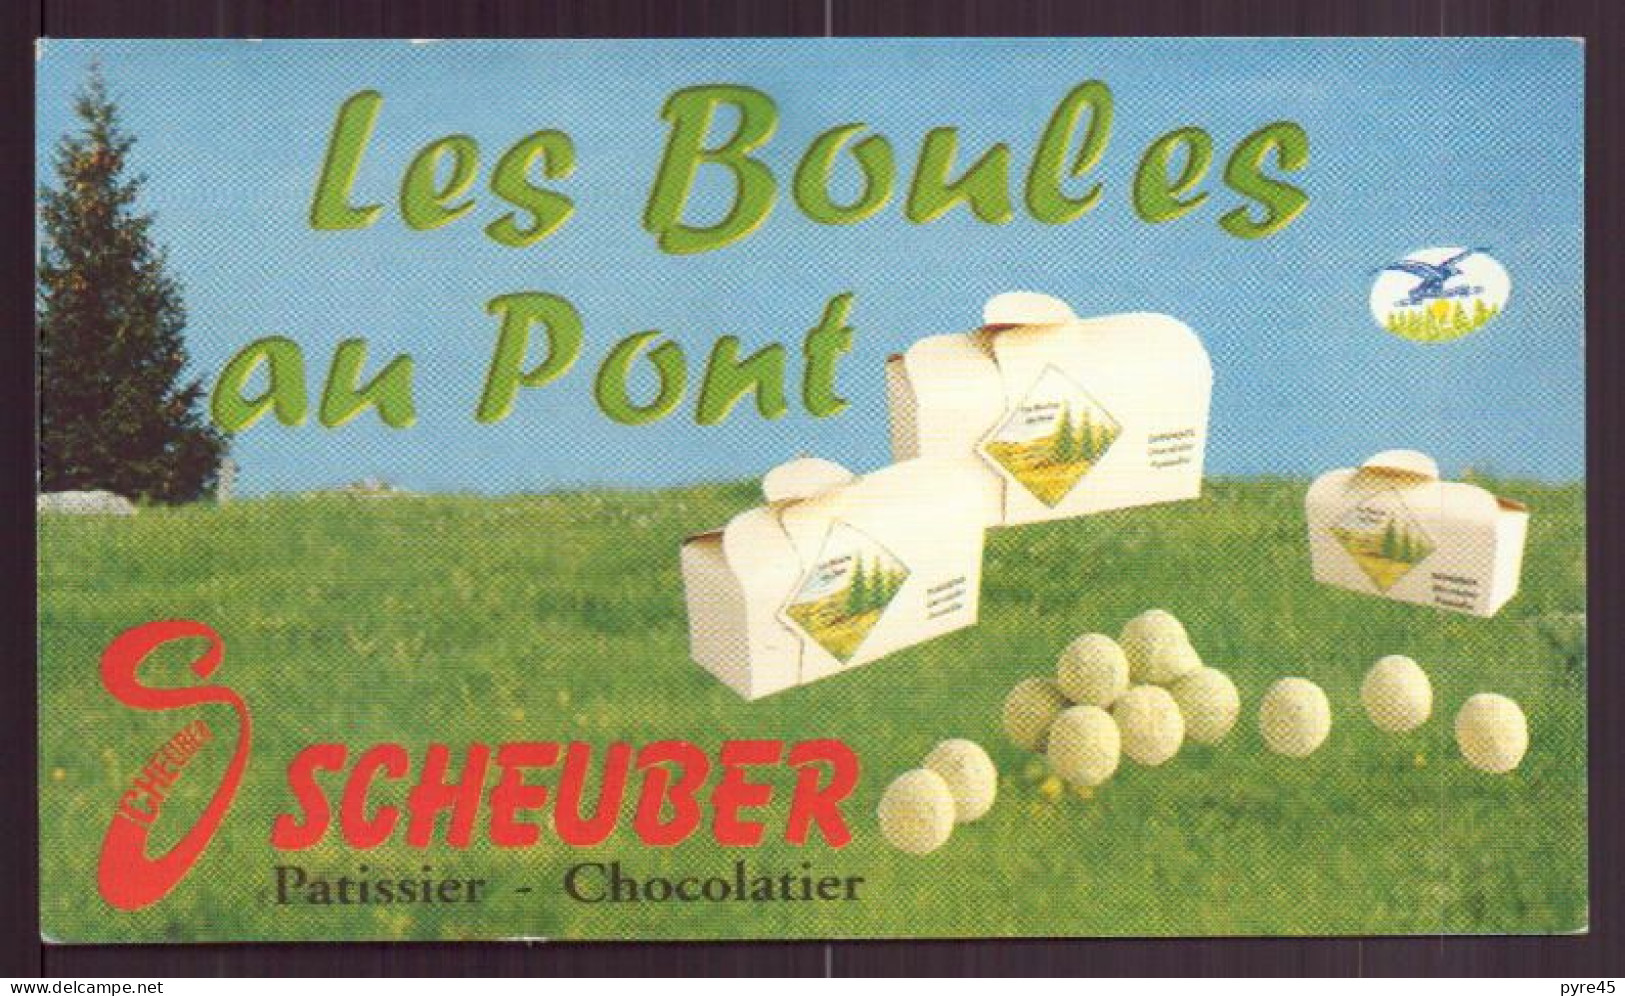 CARTE PUBLICITAIRE LES BOULES AU PONT SCHEUBER PATISSIER CHOCOLATIER A PONTARLIER - Cartes De Visite